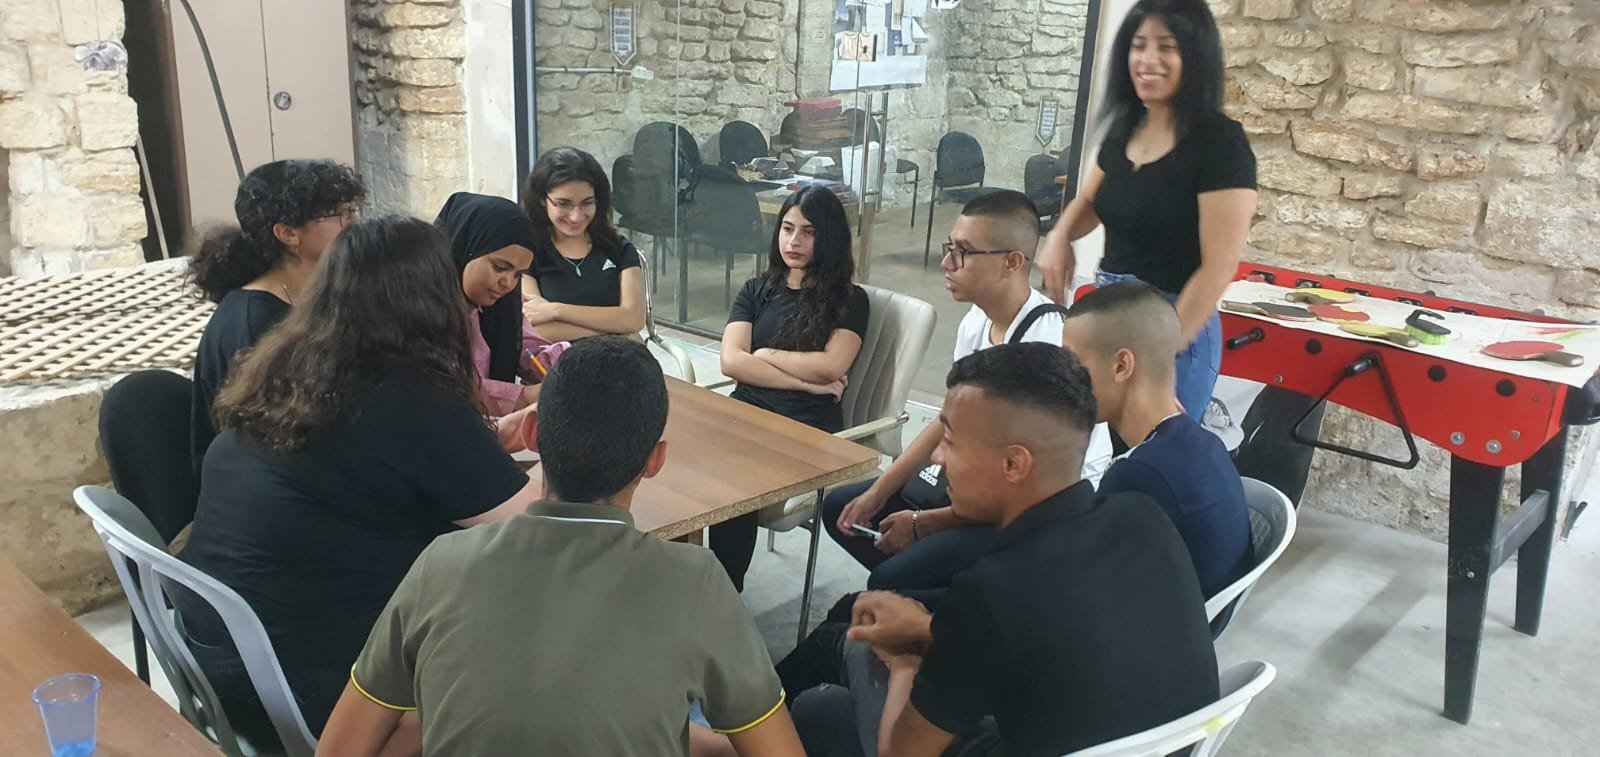 مشروع "صوت واحد" ينظم اللقاء الثاني ويعرّف المشاركين على "سوق الناصرة"-6